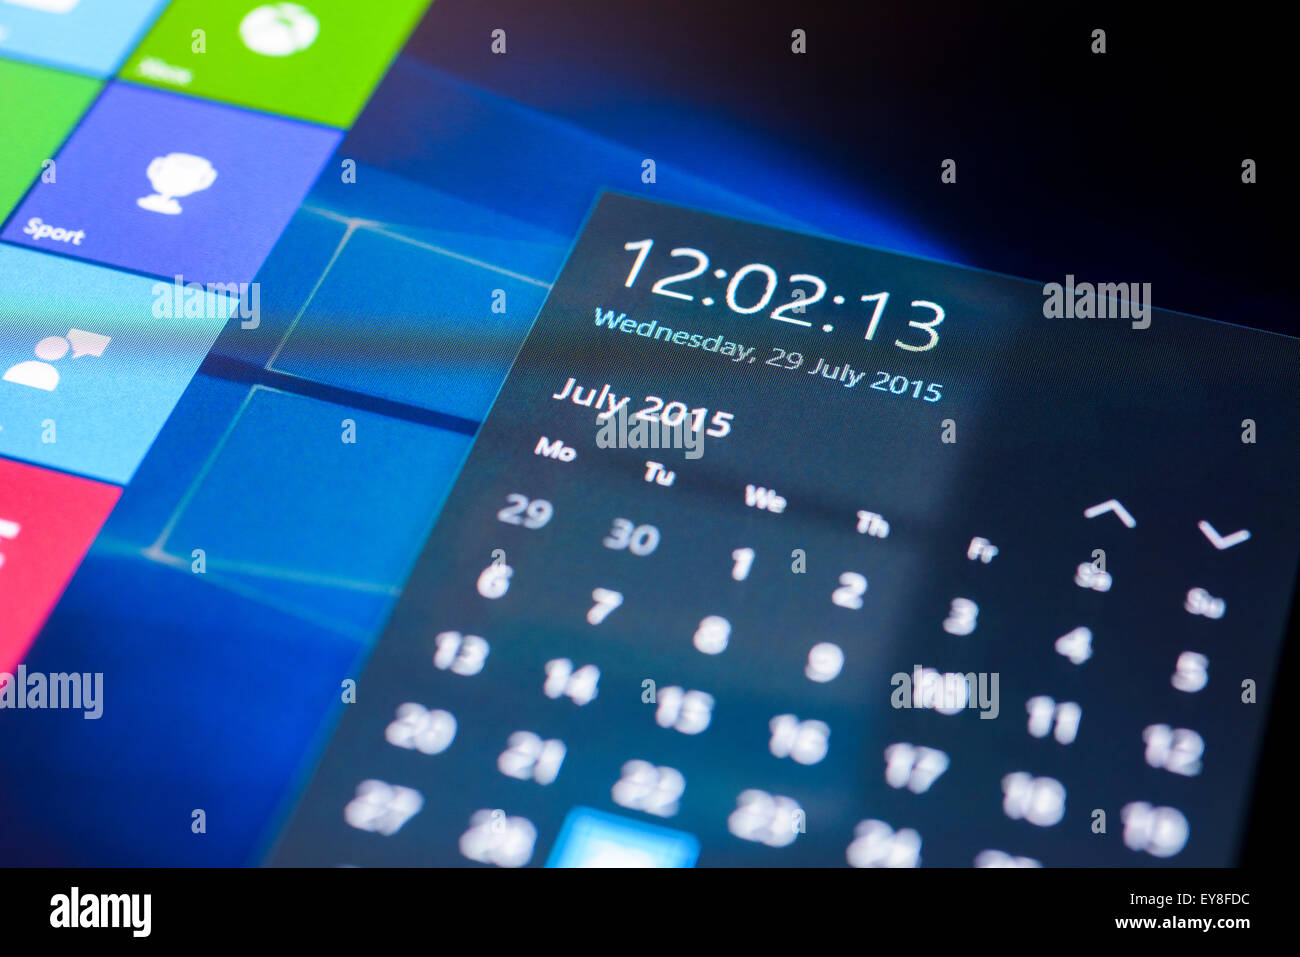 Microsoft Windows 10 Sistema operativo su un touch screen tablet in modalità tablet che mostra la data di lancio il 29 luglio 2015. Foto Stock